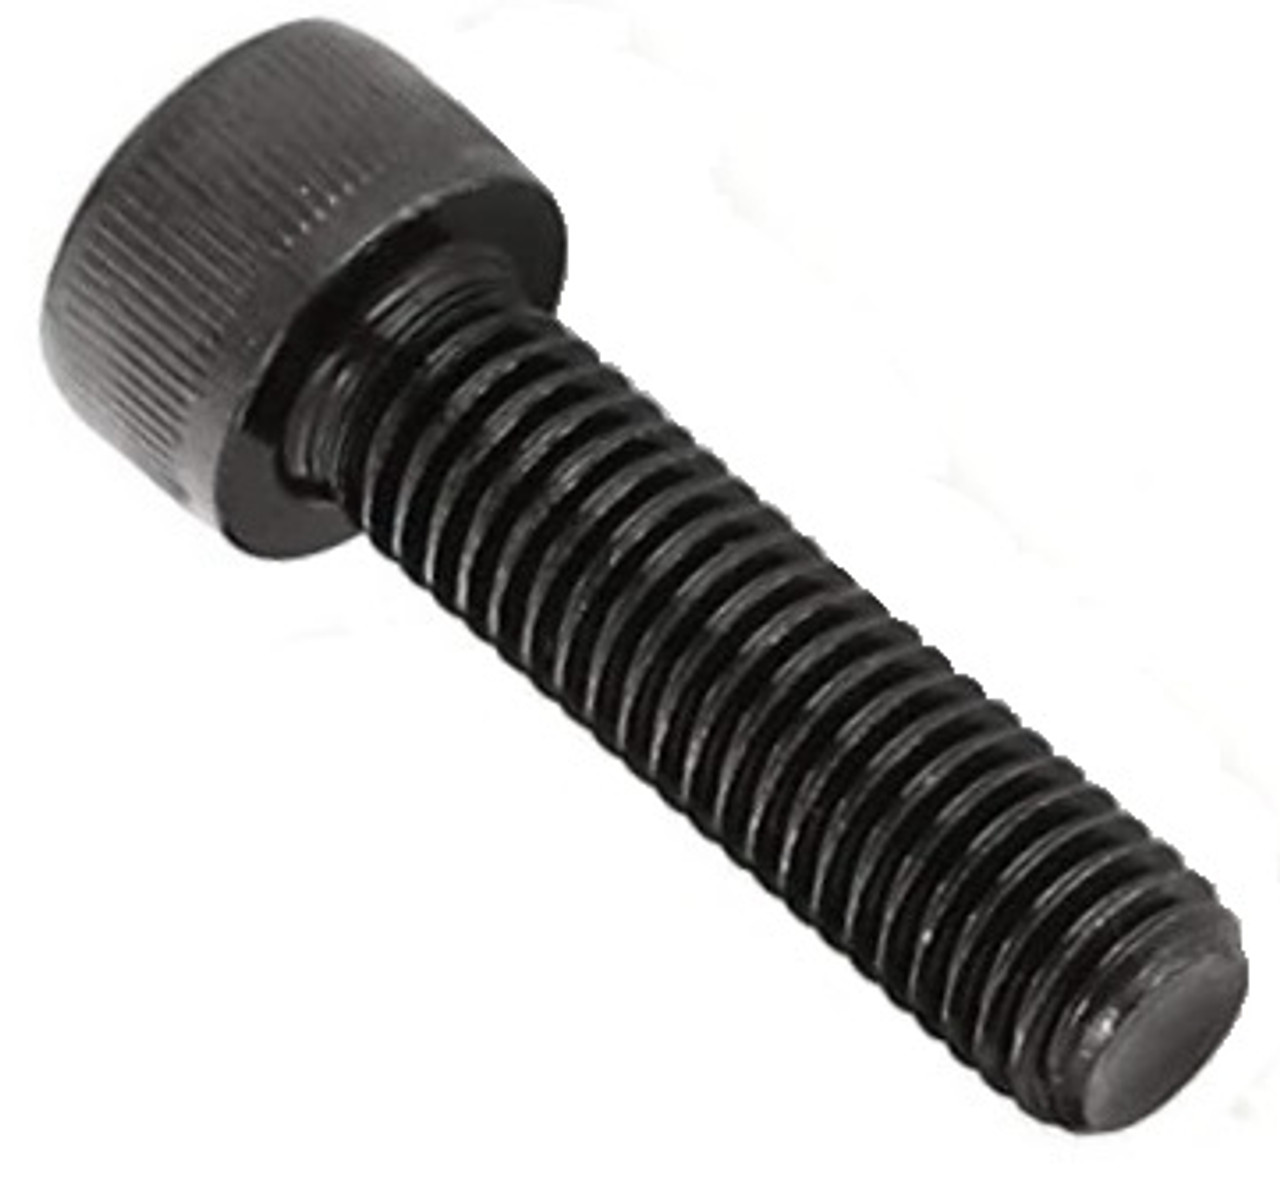 #4-40 UNC Socket Head Cap Screw - Black Oxide  011033 - 011041